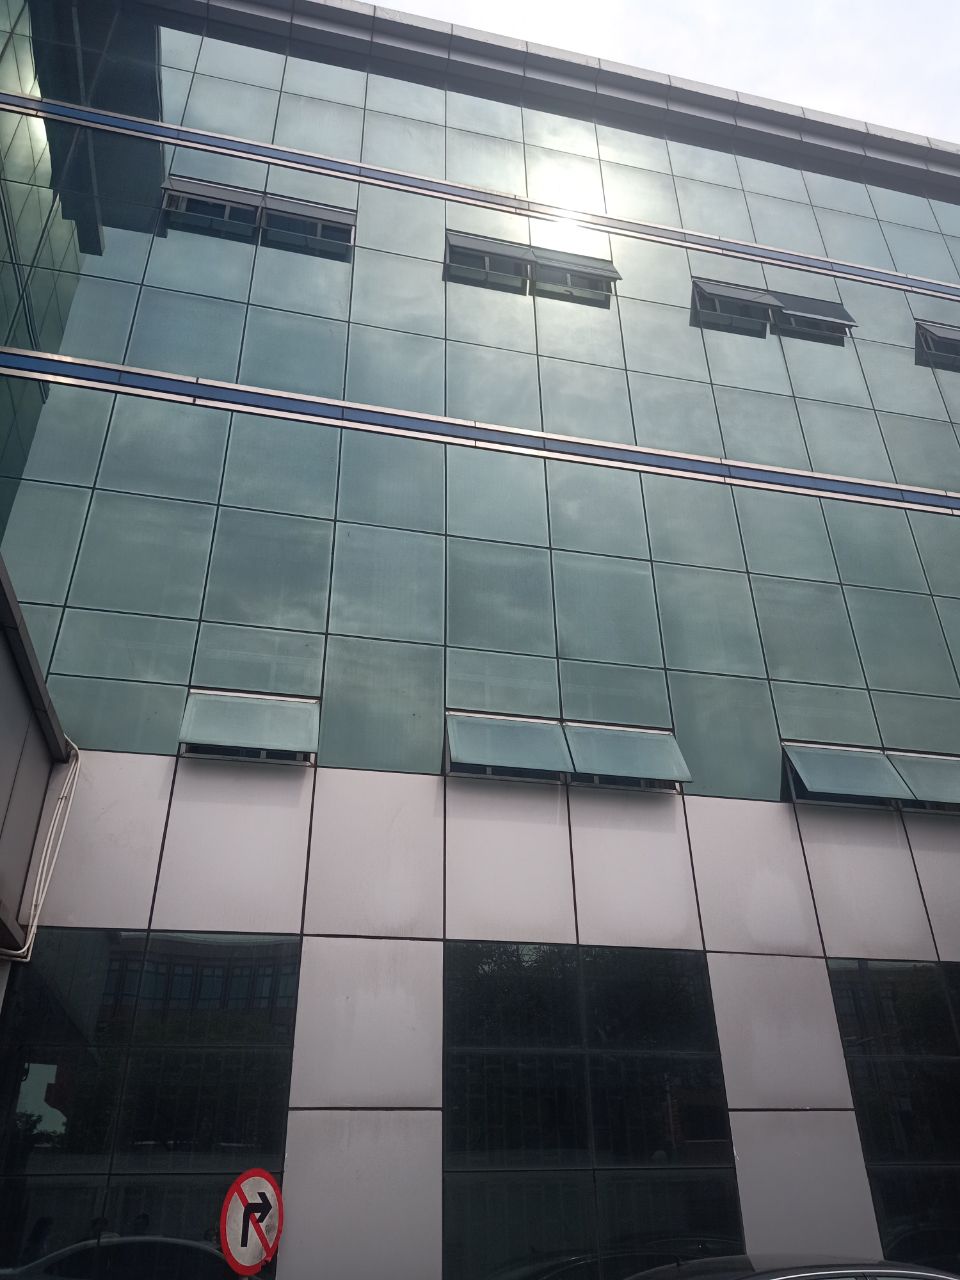 湖北省咸宁市玻璃幕墙安全性排查中心